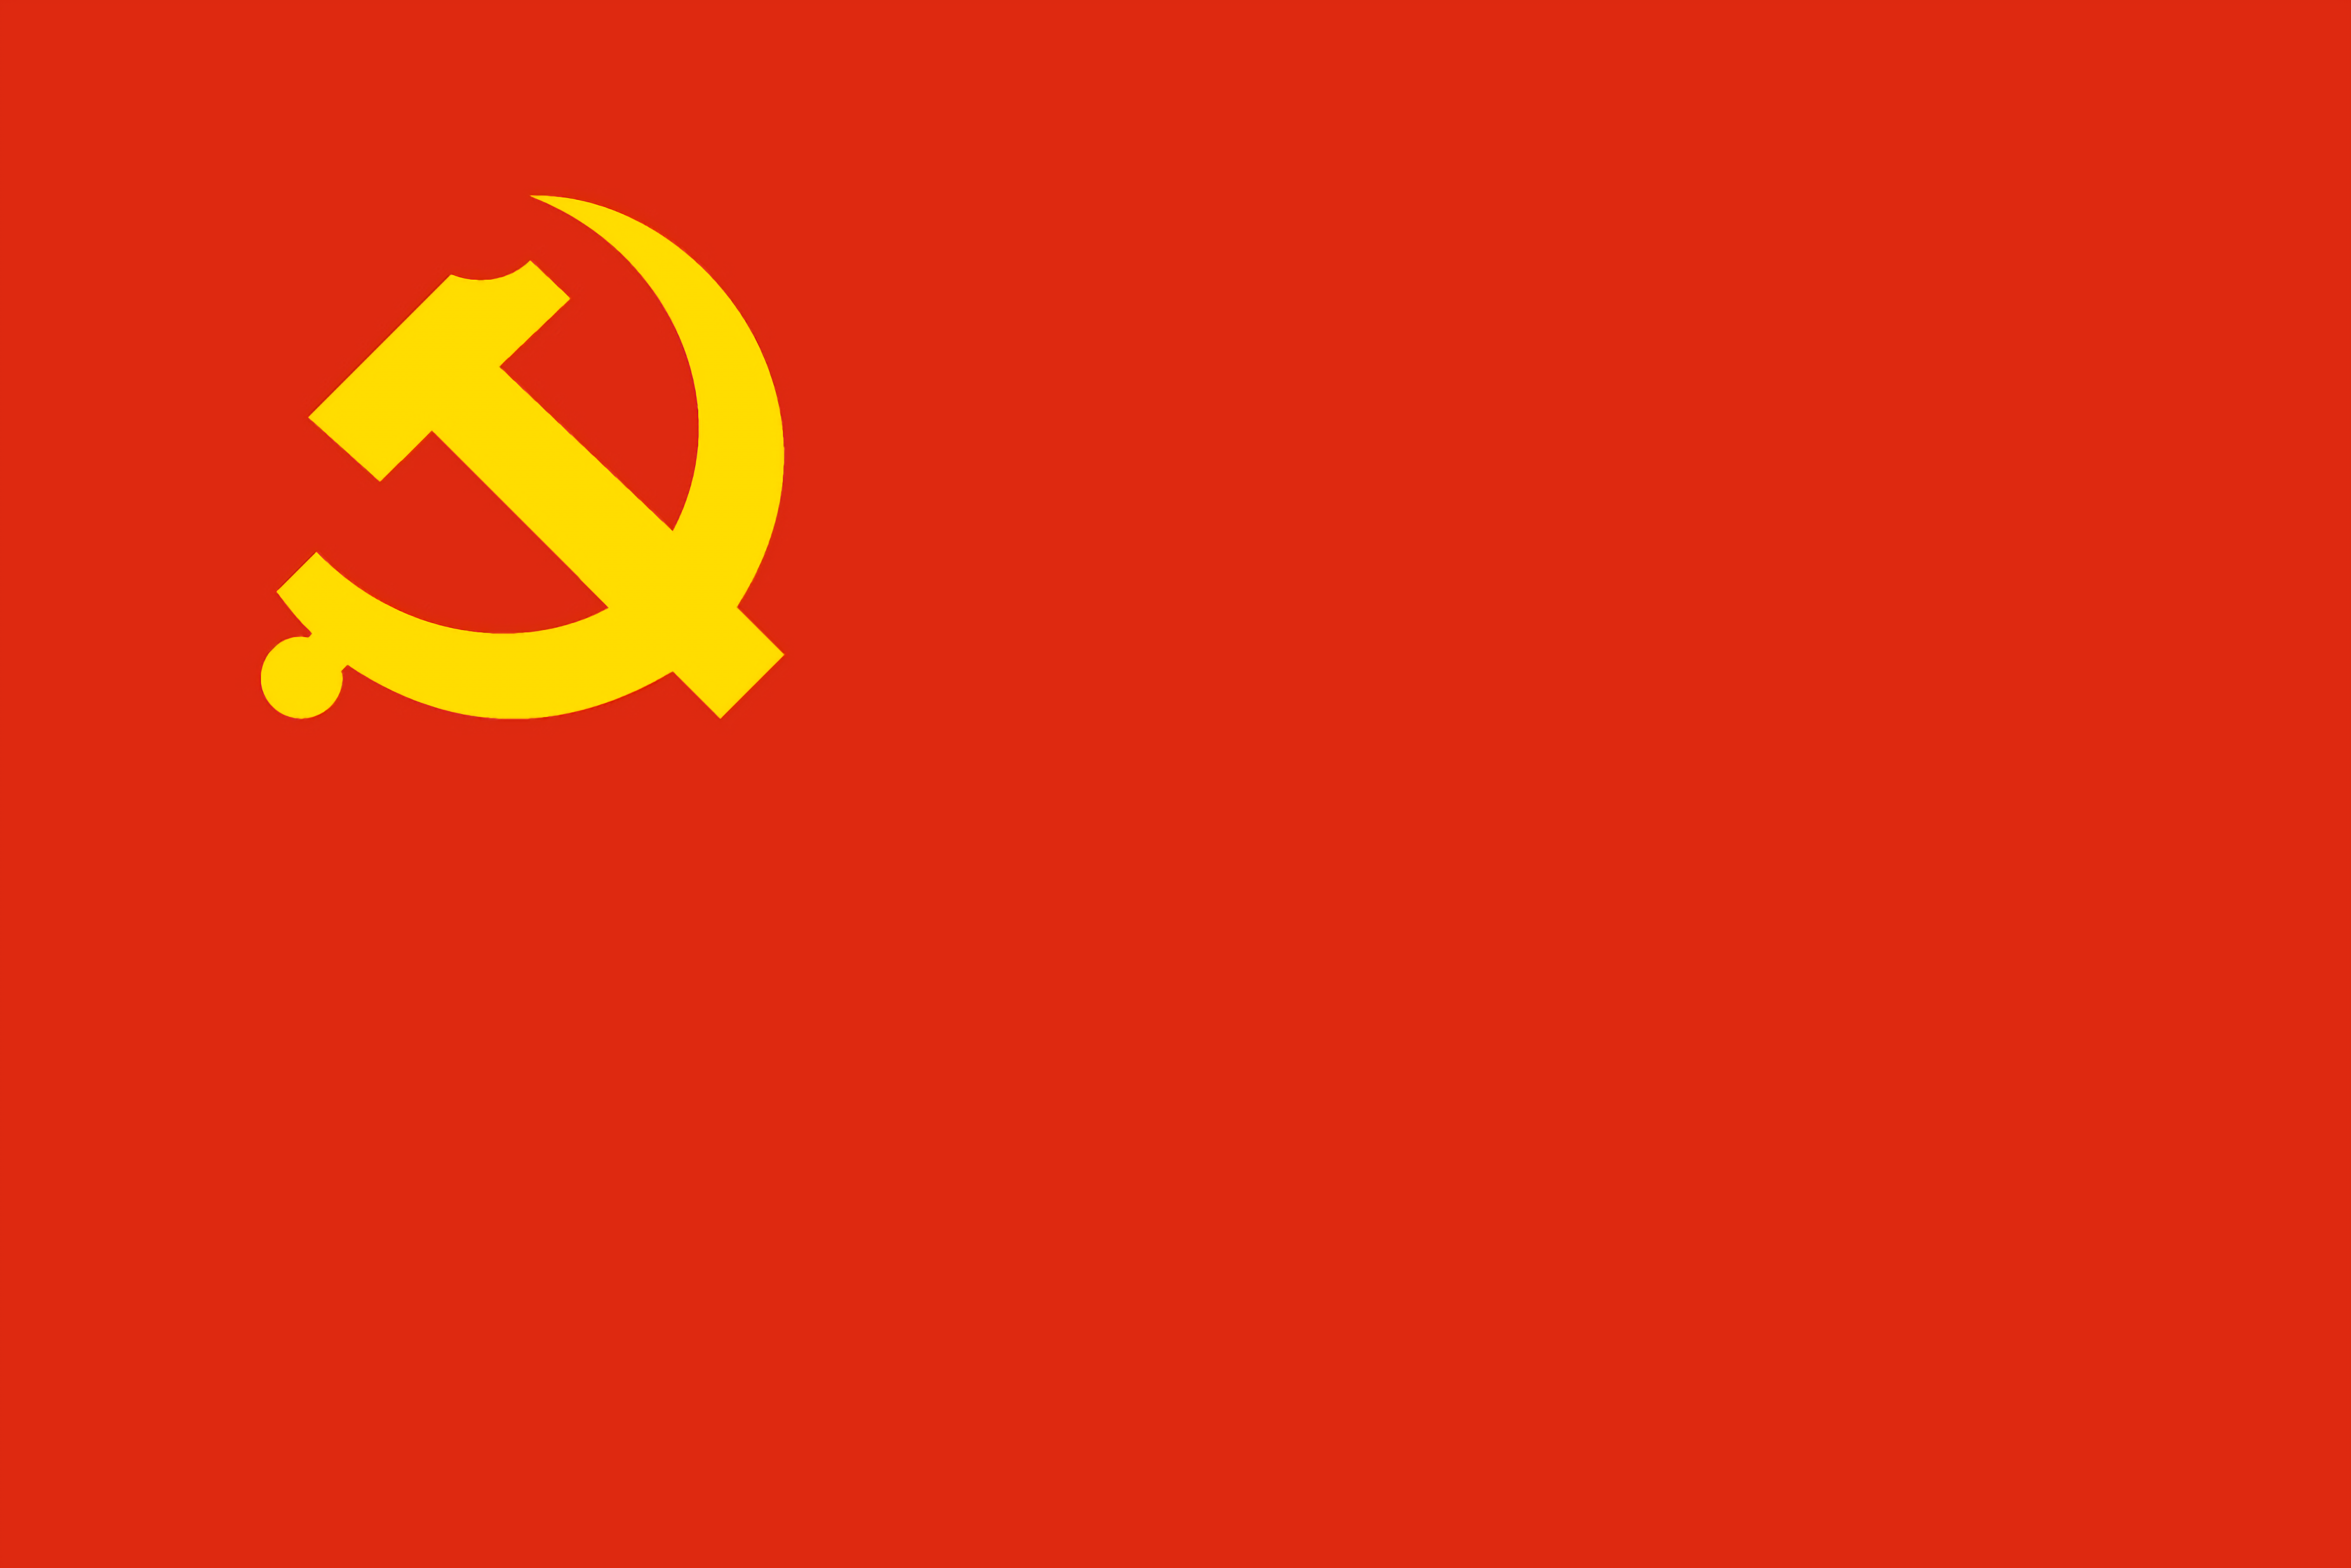 中共苏区击破蒋介石第一次“围剿”